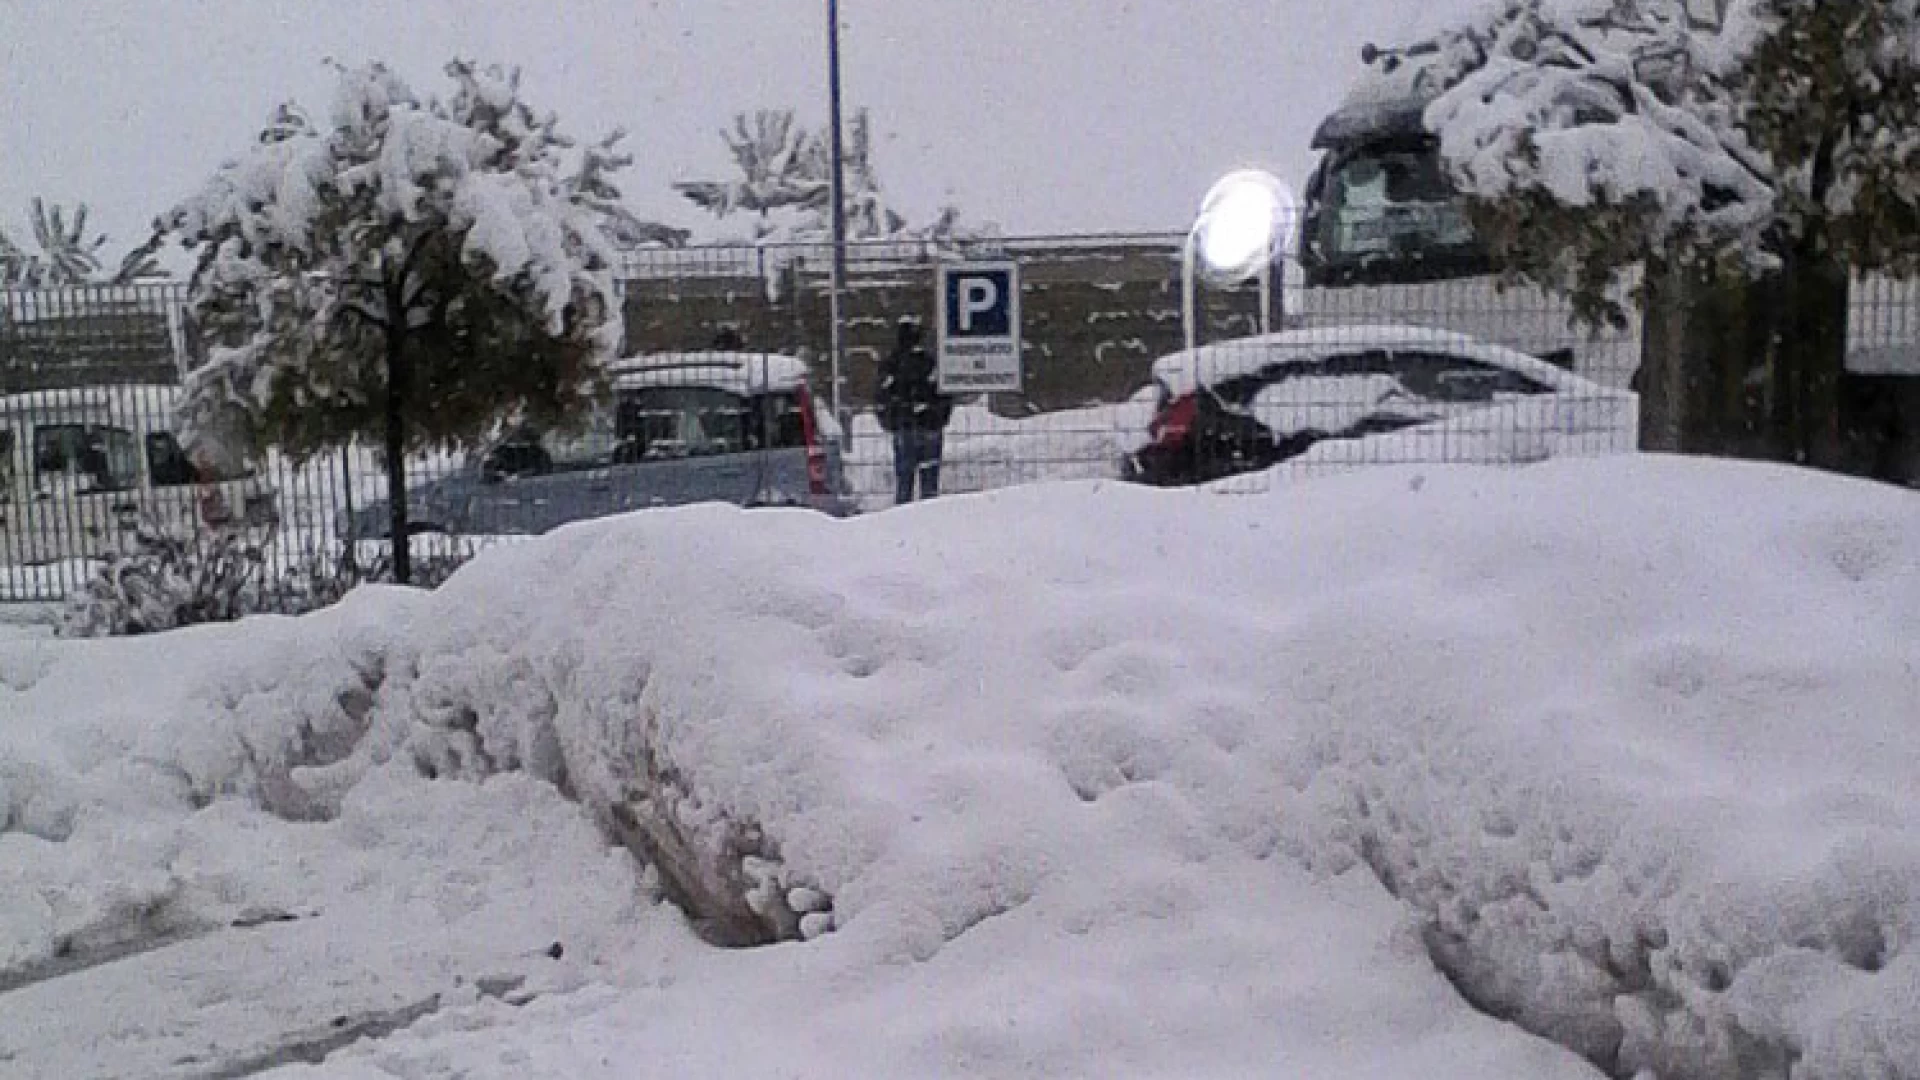 Emergenza neve: ore difficili sul capoluogo di Regione Campobasso. Bufera di neve in atto e circolazione ridotta al minimo.